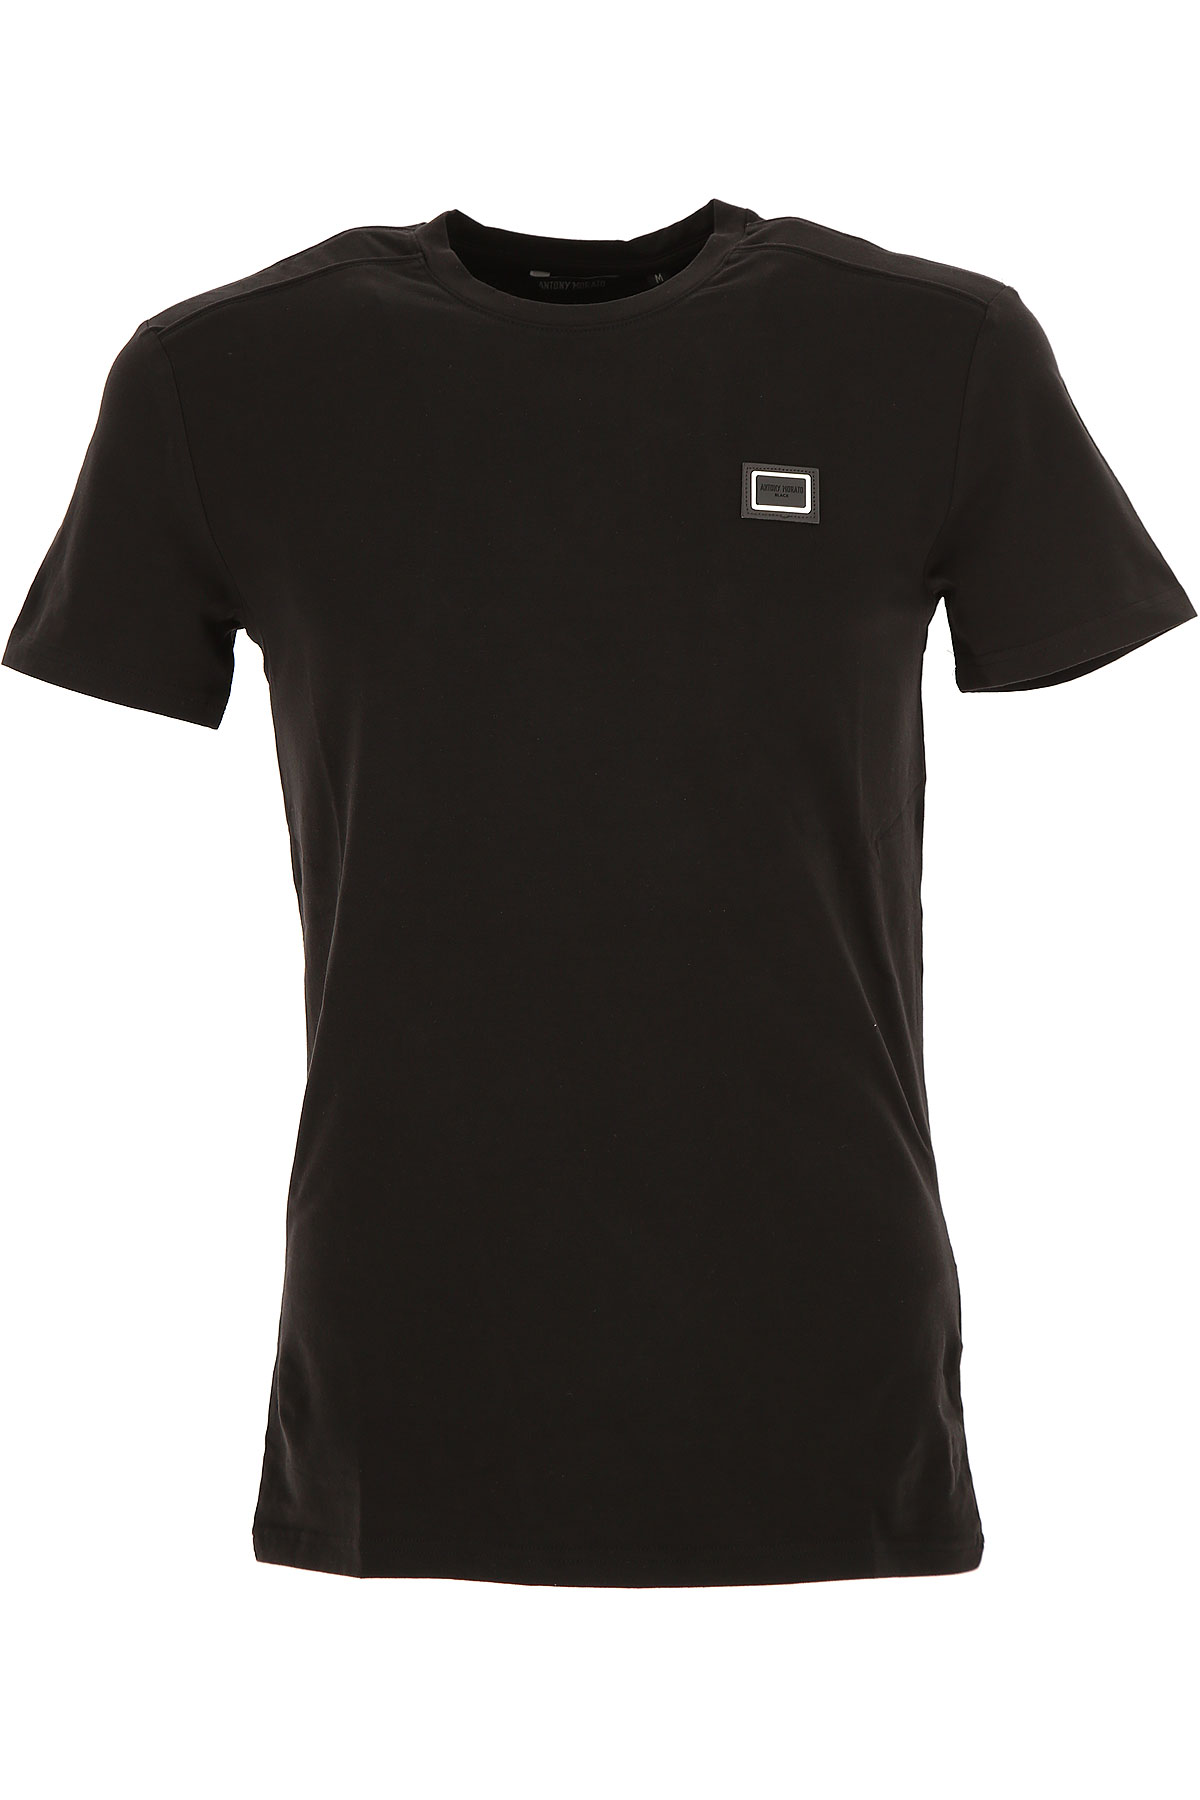 Antony Morato T-shirt Homme, Noir, Coton, 2017, L M S XL XXL